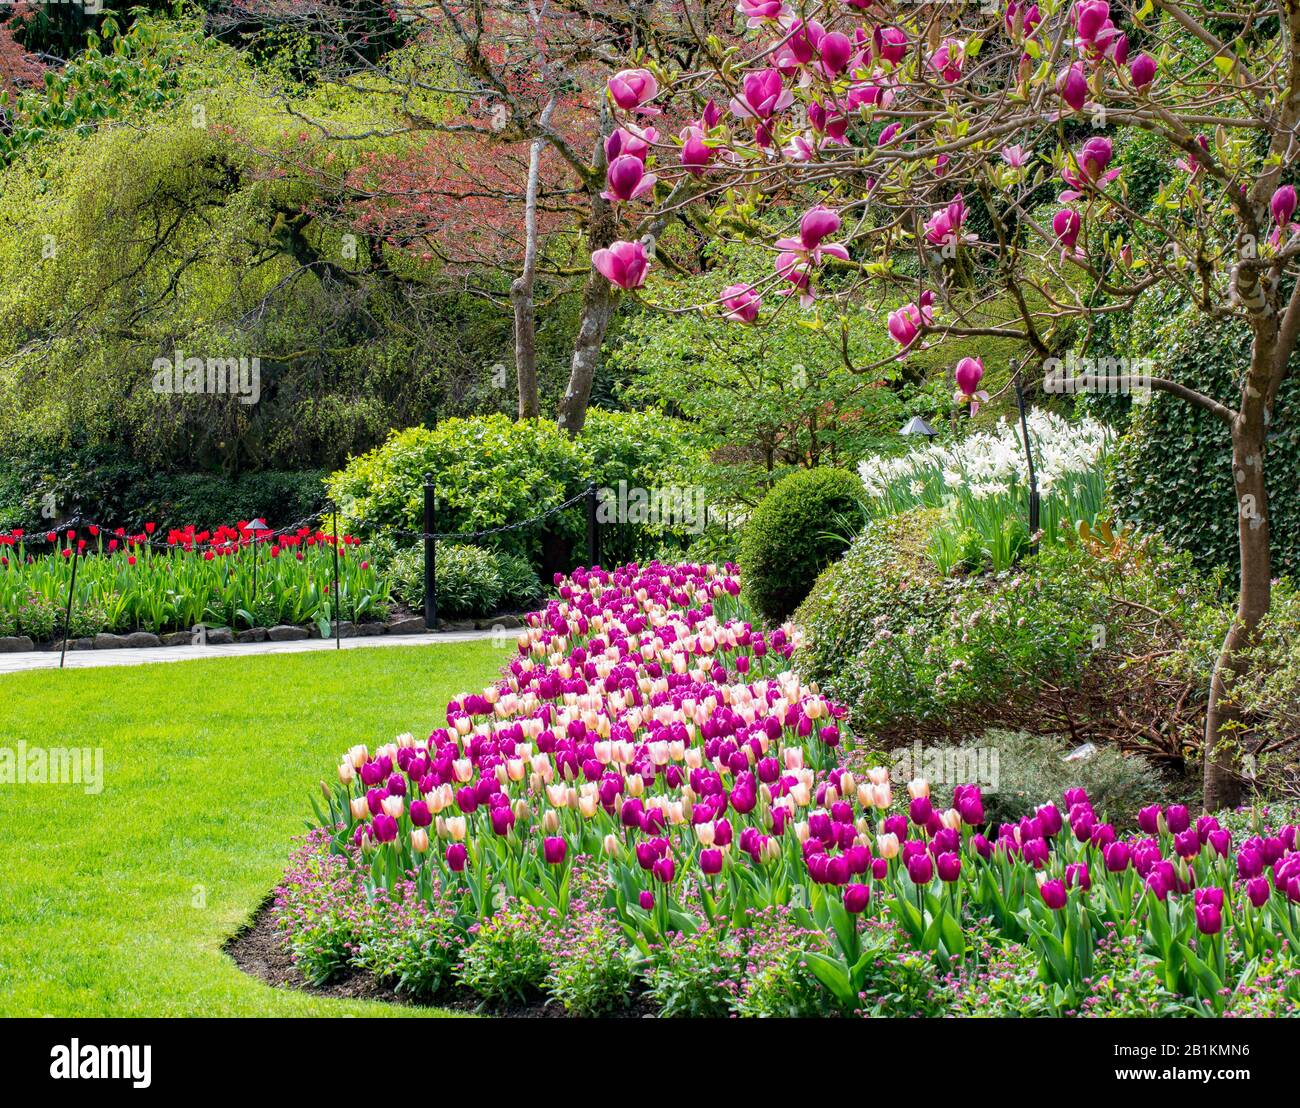 Jardin de tulipes roses à côté d'un arbre de Magnolia en fleurs Banque D'Images